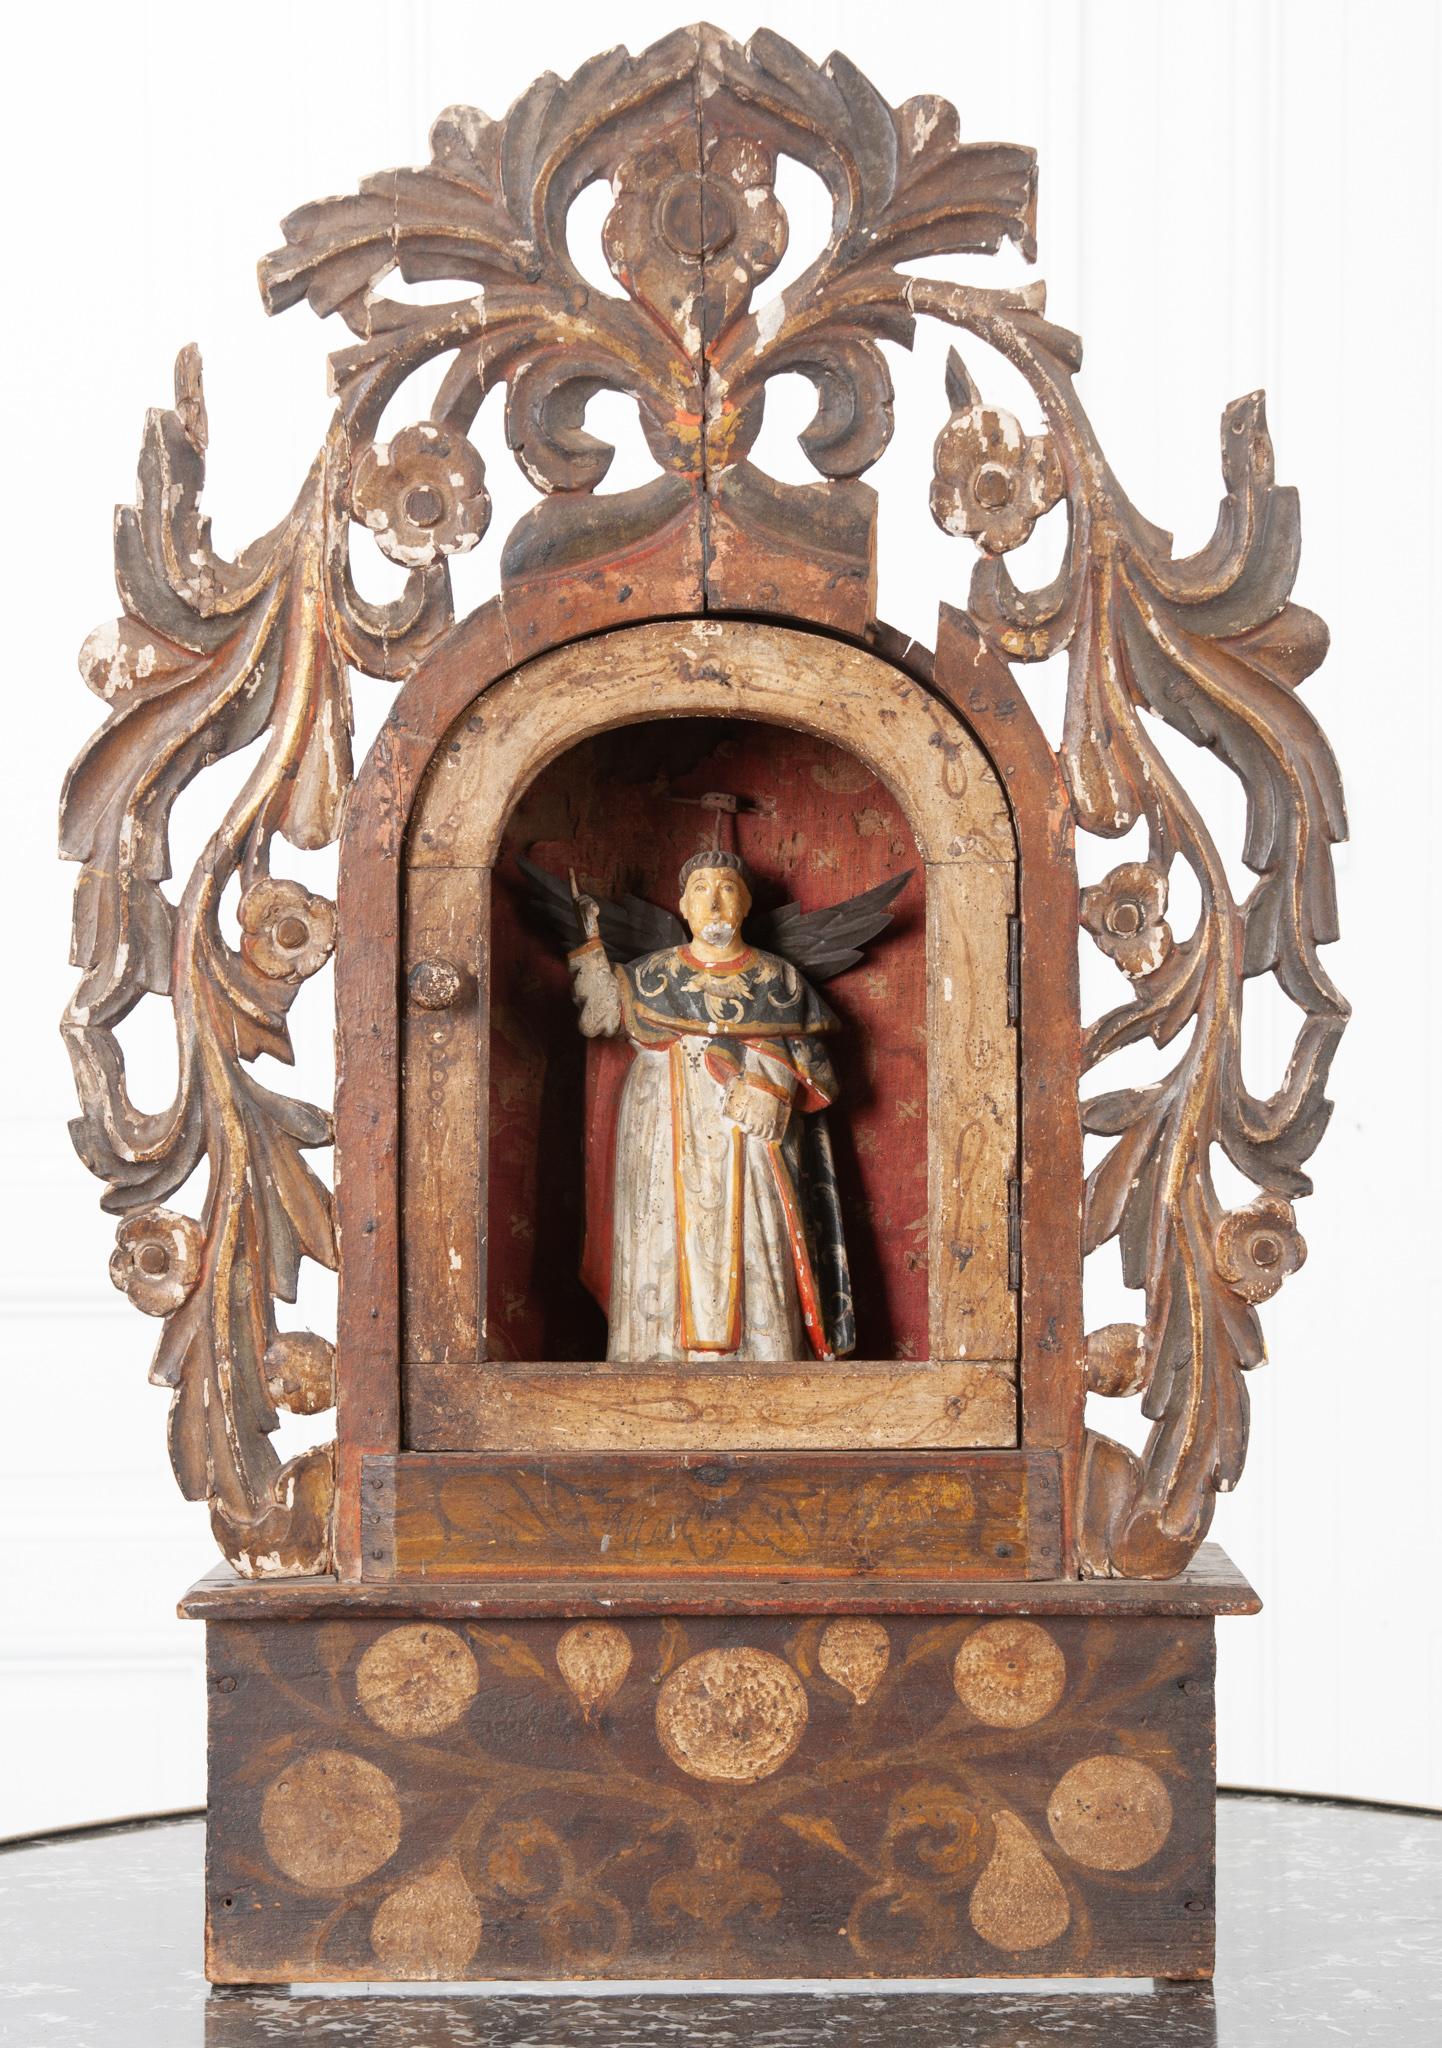 Cet autel italien du début du XIXe siècle est fait de bois peint usé et de détails en tissu usé. Il s'agit d'un autel très décoratif pour le saint catholique inconnu sculpté au centre, désigné par son doigt pointé vers le haut, ses ailes et